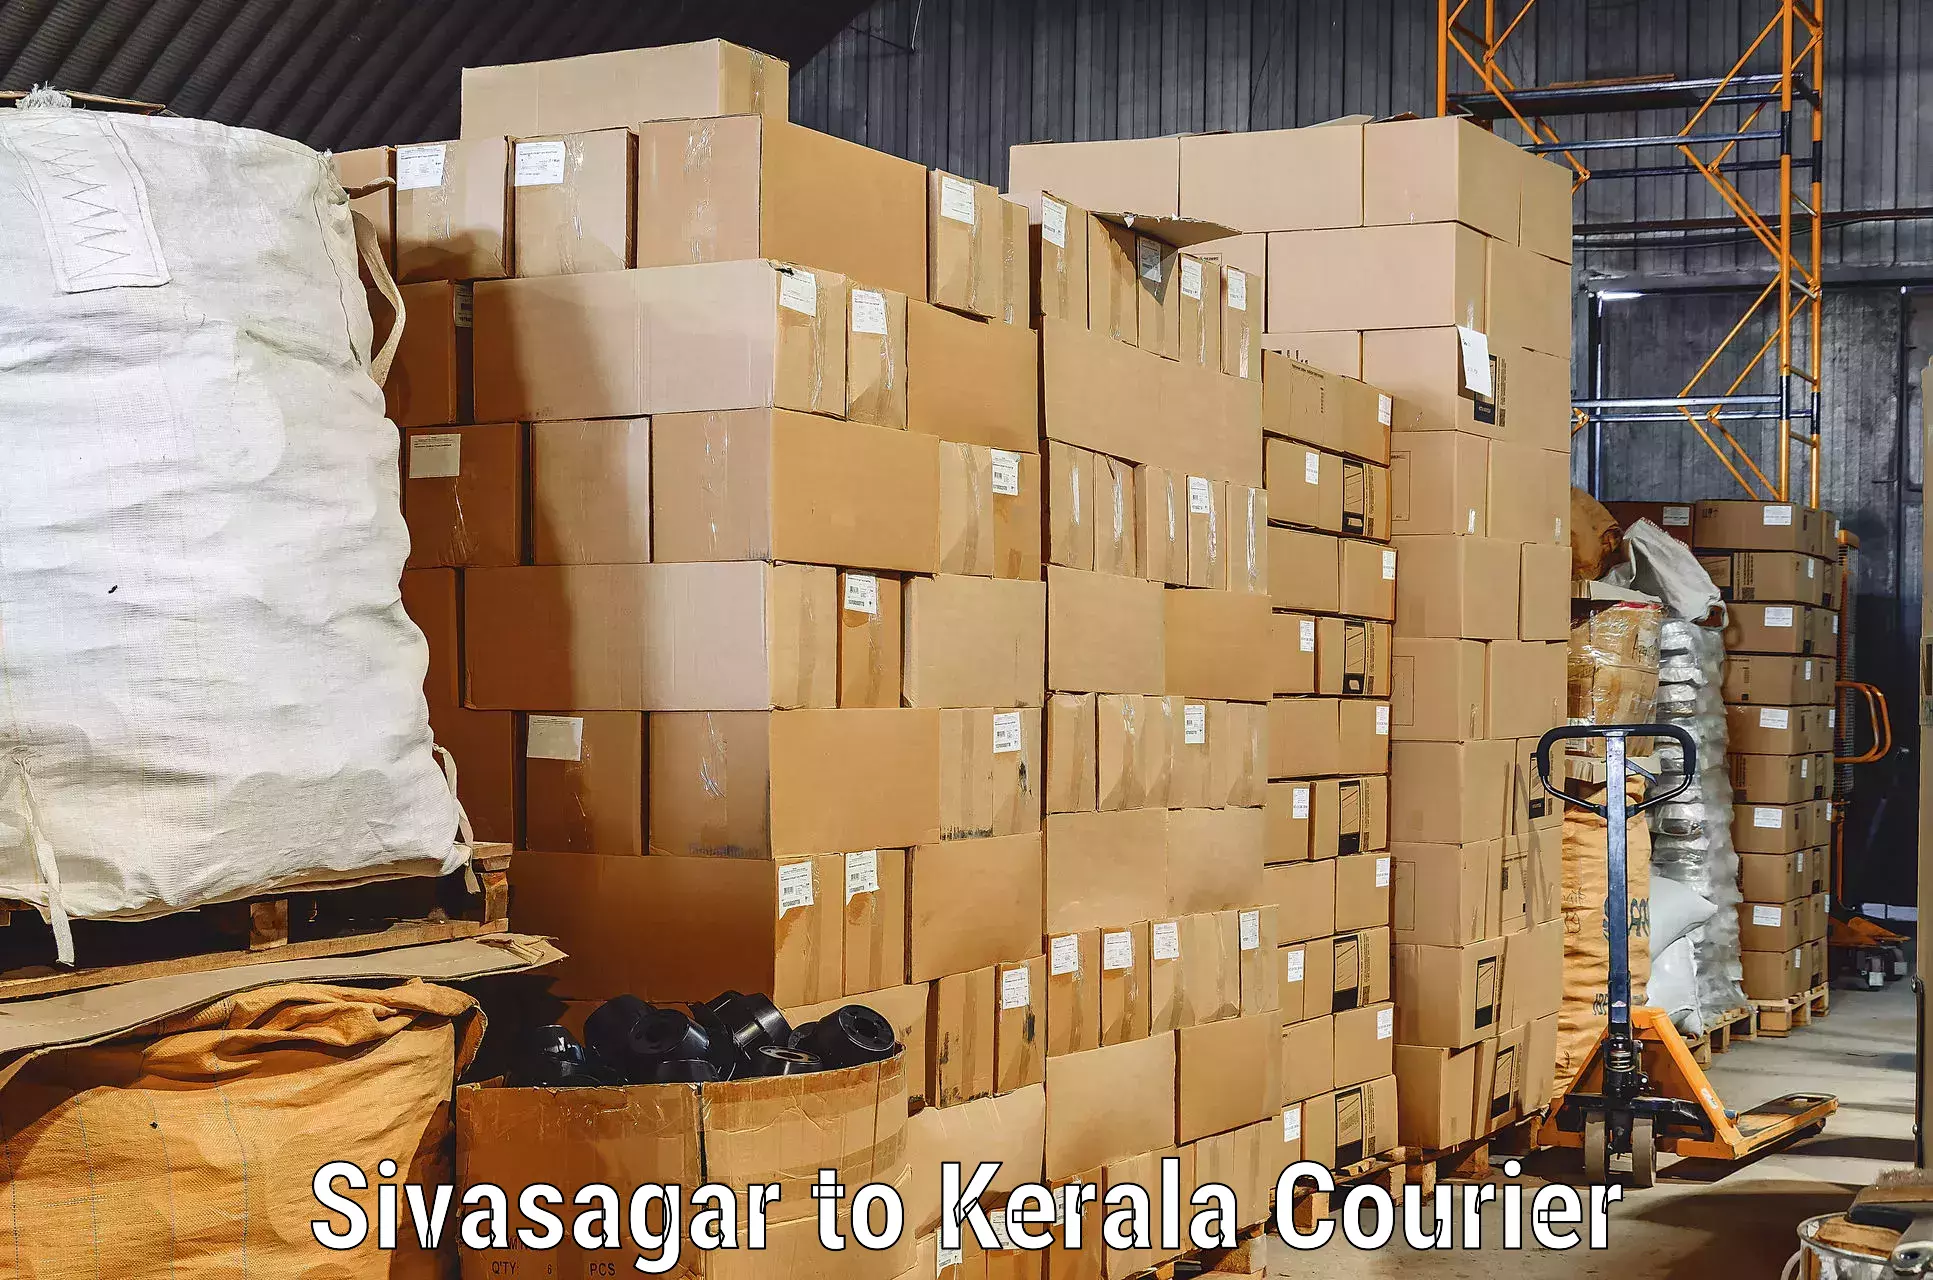 Furniture relocation experts Sivasagar to Thiruvananthapuram